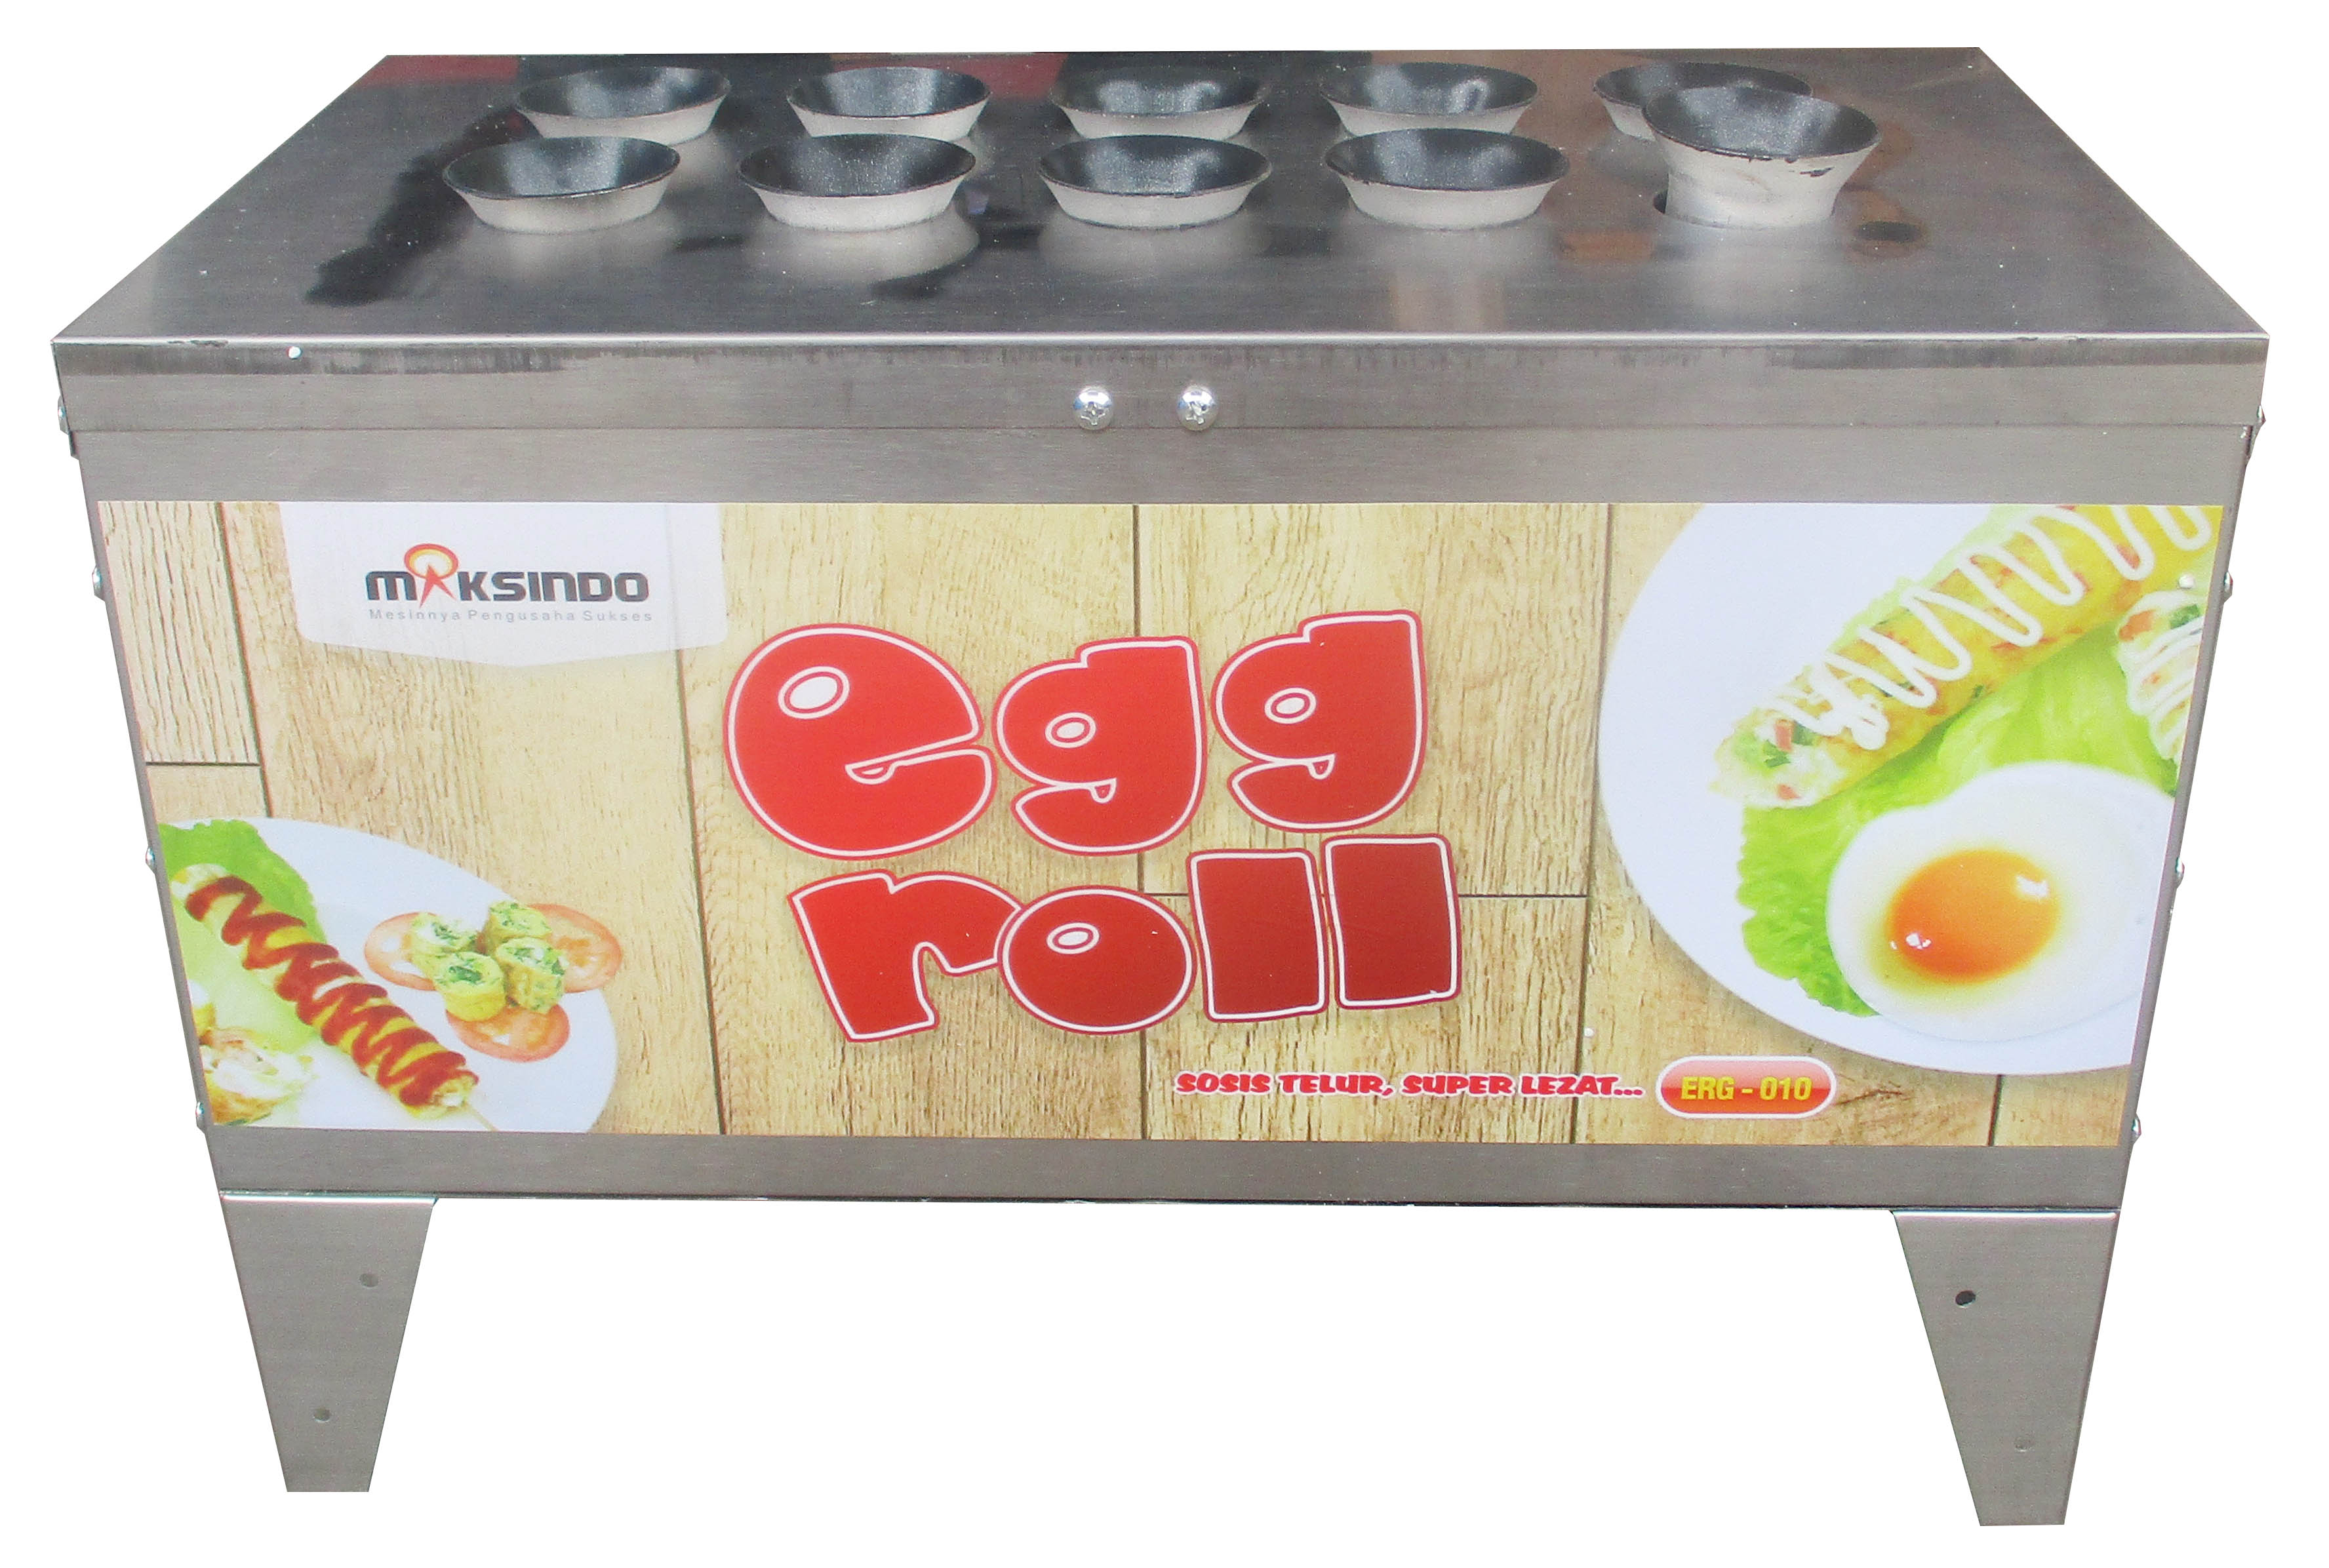 Jual Mesin Pembuat Egg Roll ERG-010 di Tangerang